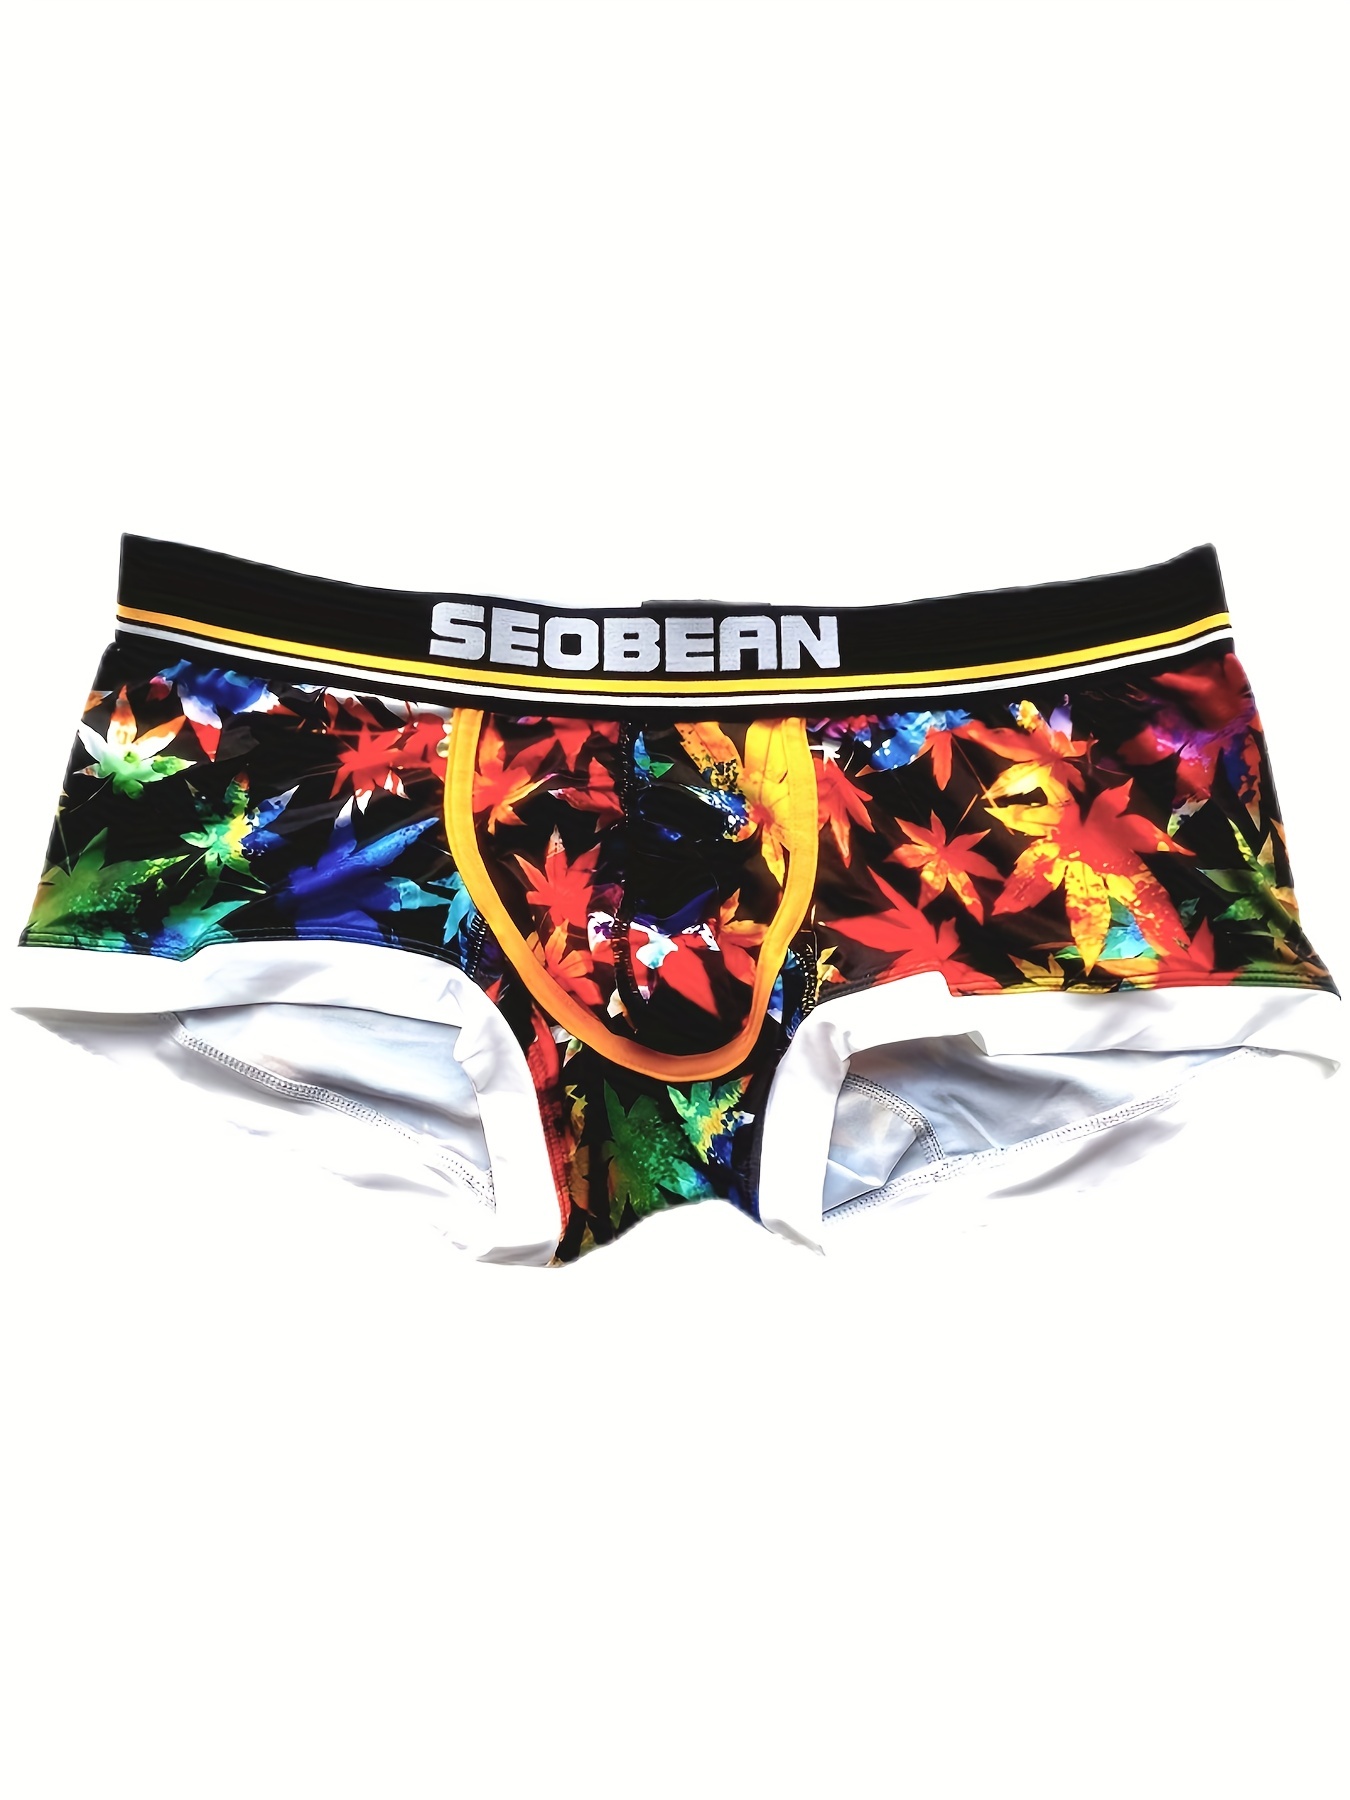 Men's Underwear Boxer Briefs Ice Silk Shorts Panties Bulge Pouch Underpants  Slim